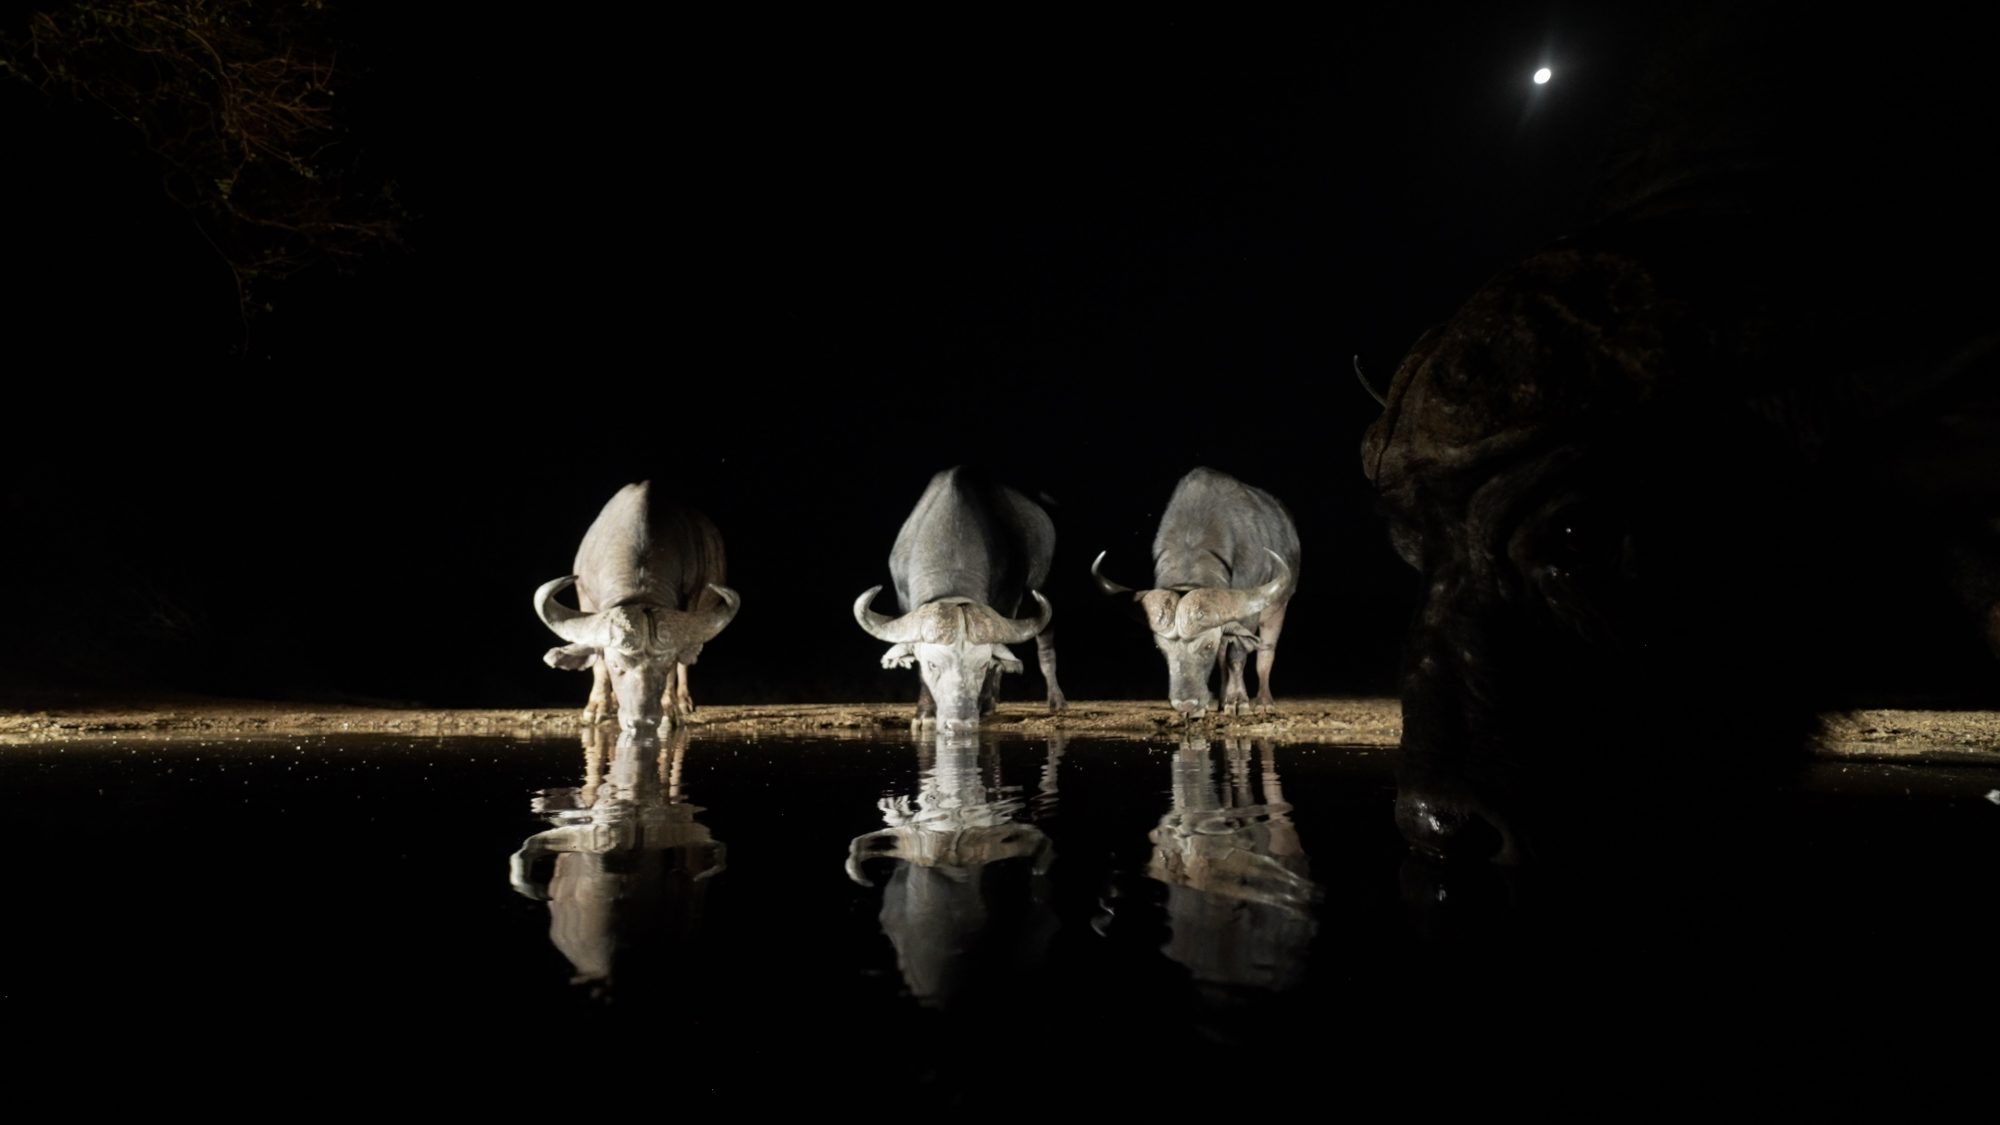 Cape Buffalo by moon light – Zimanga, South Africa 2022